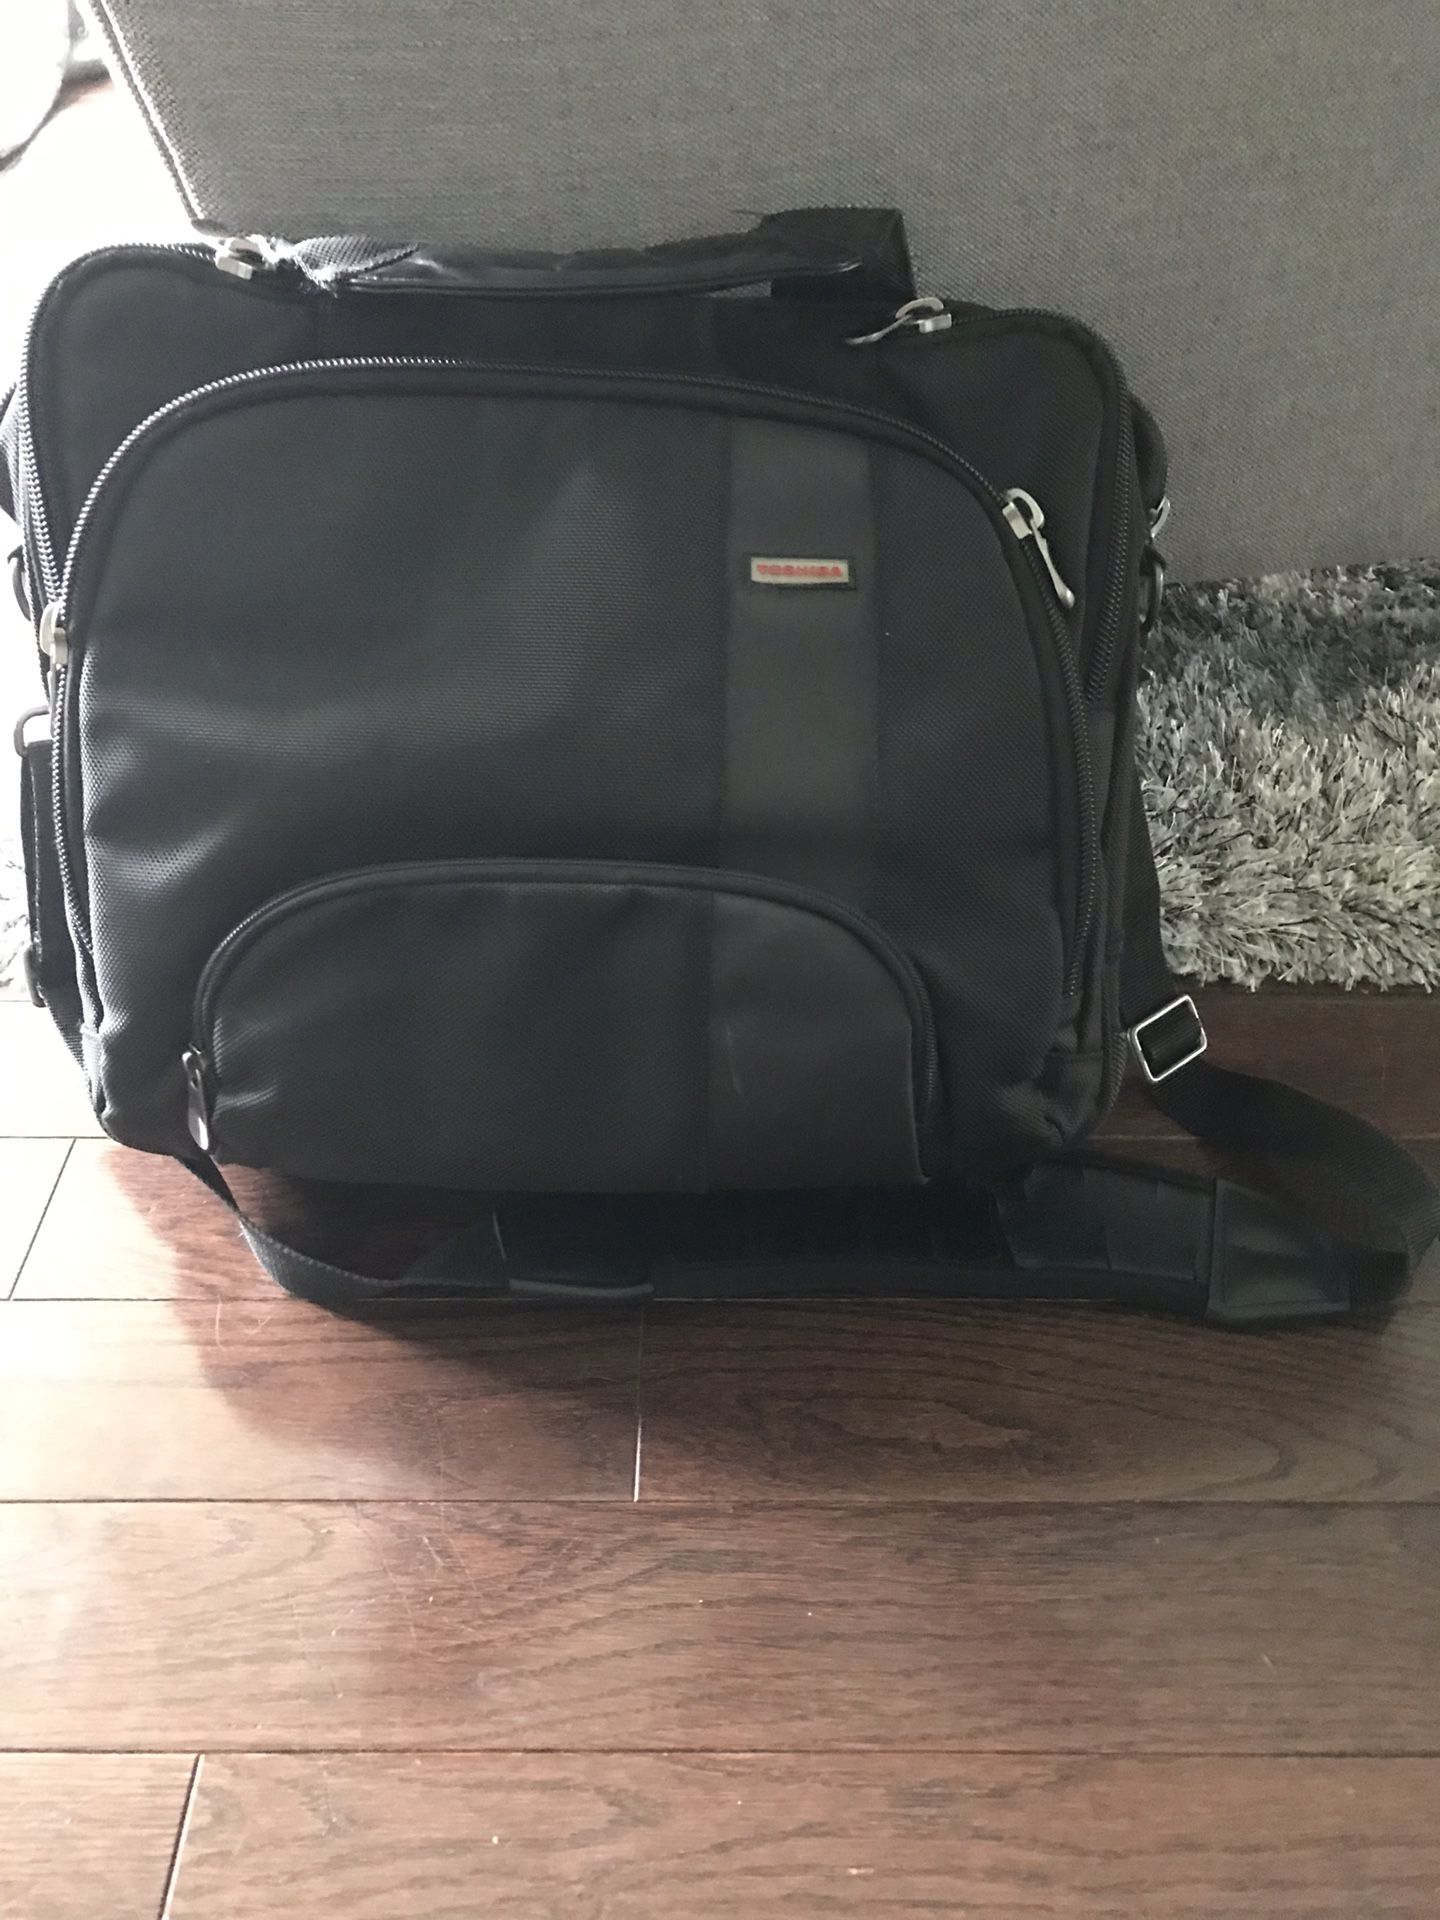 Computer/laptop bag- Toshiba